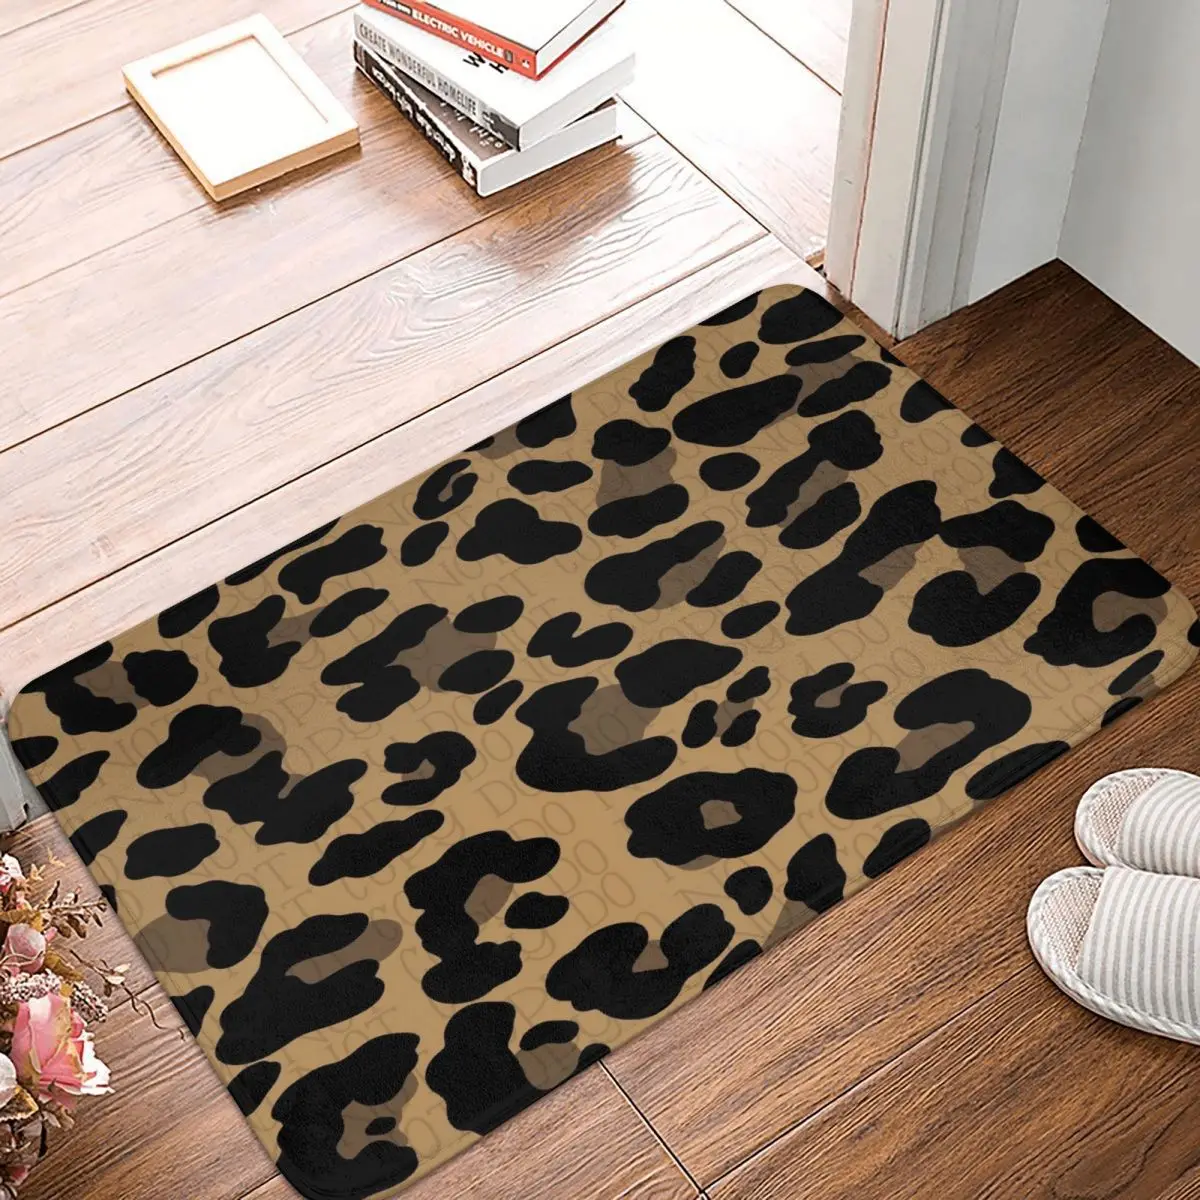 

Leopard Doormat Bathroom Printed Polyeste Mat Kitchen Home Hallway Skin Fur Decoration Floor Rug Door Mat Bath Mat